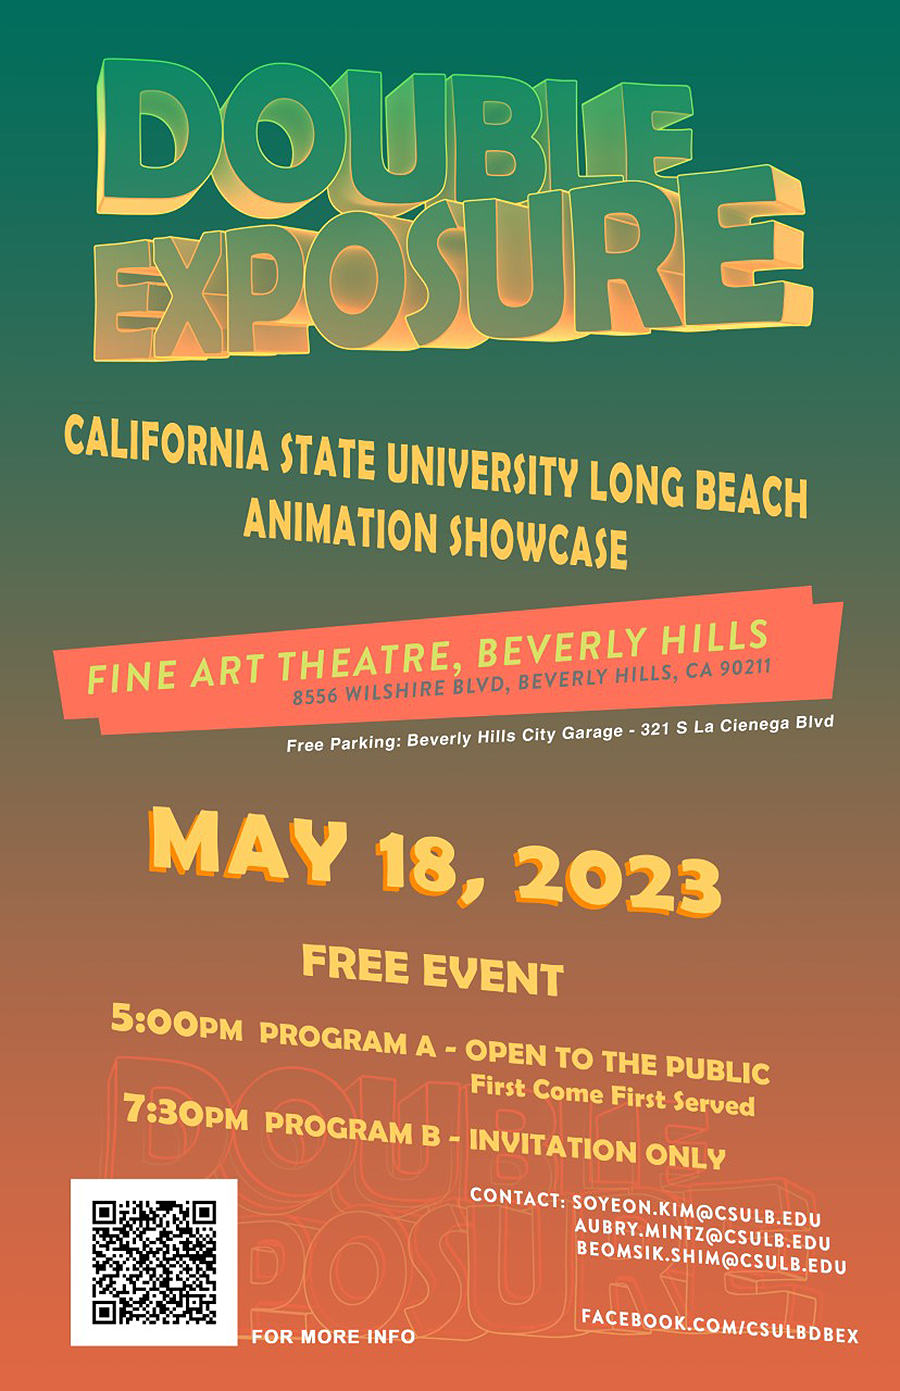 Poster Image - DOUBLE EXPOSURE - CSULB 2023 Animation Showcase